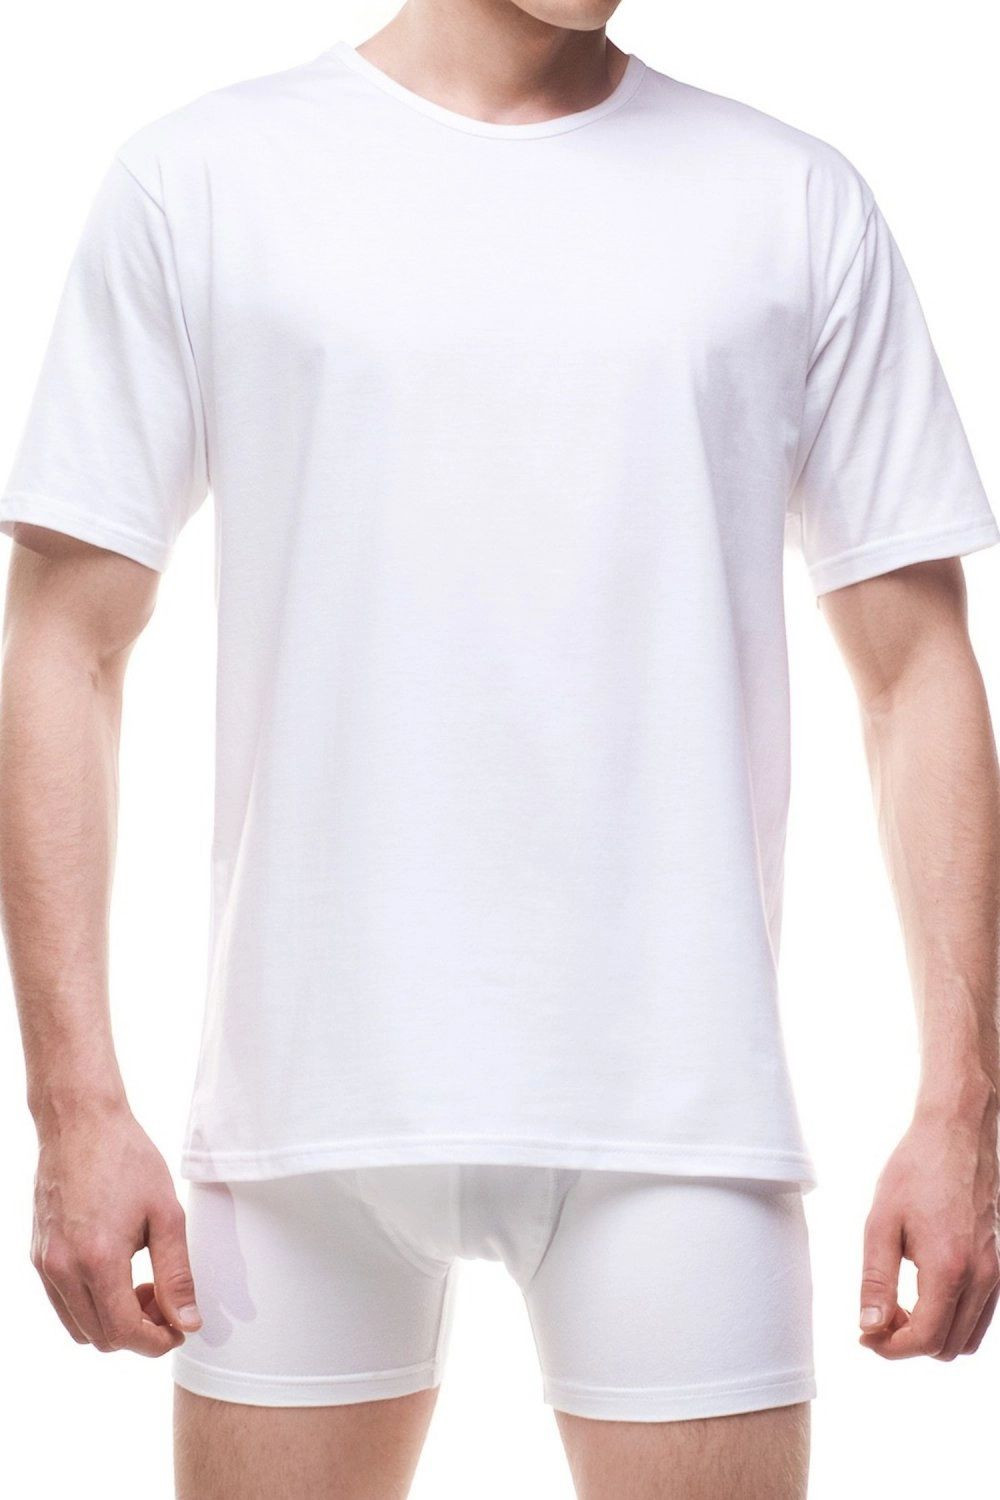 Pánské tričko 202 Authentic new white - CORNETTE Bílá M